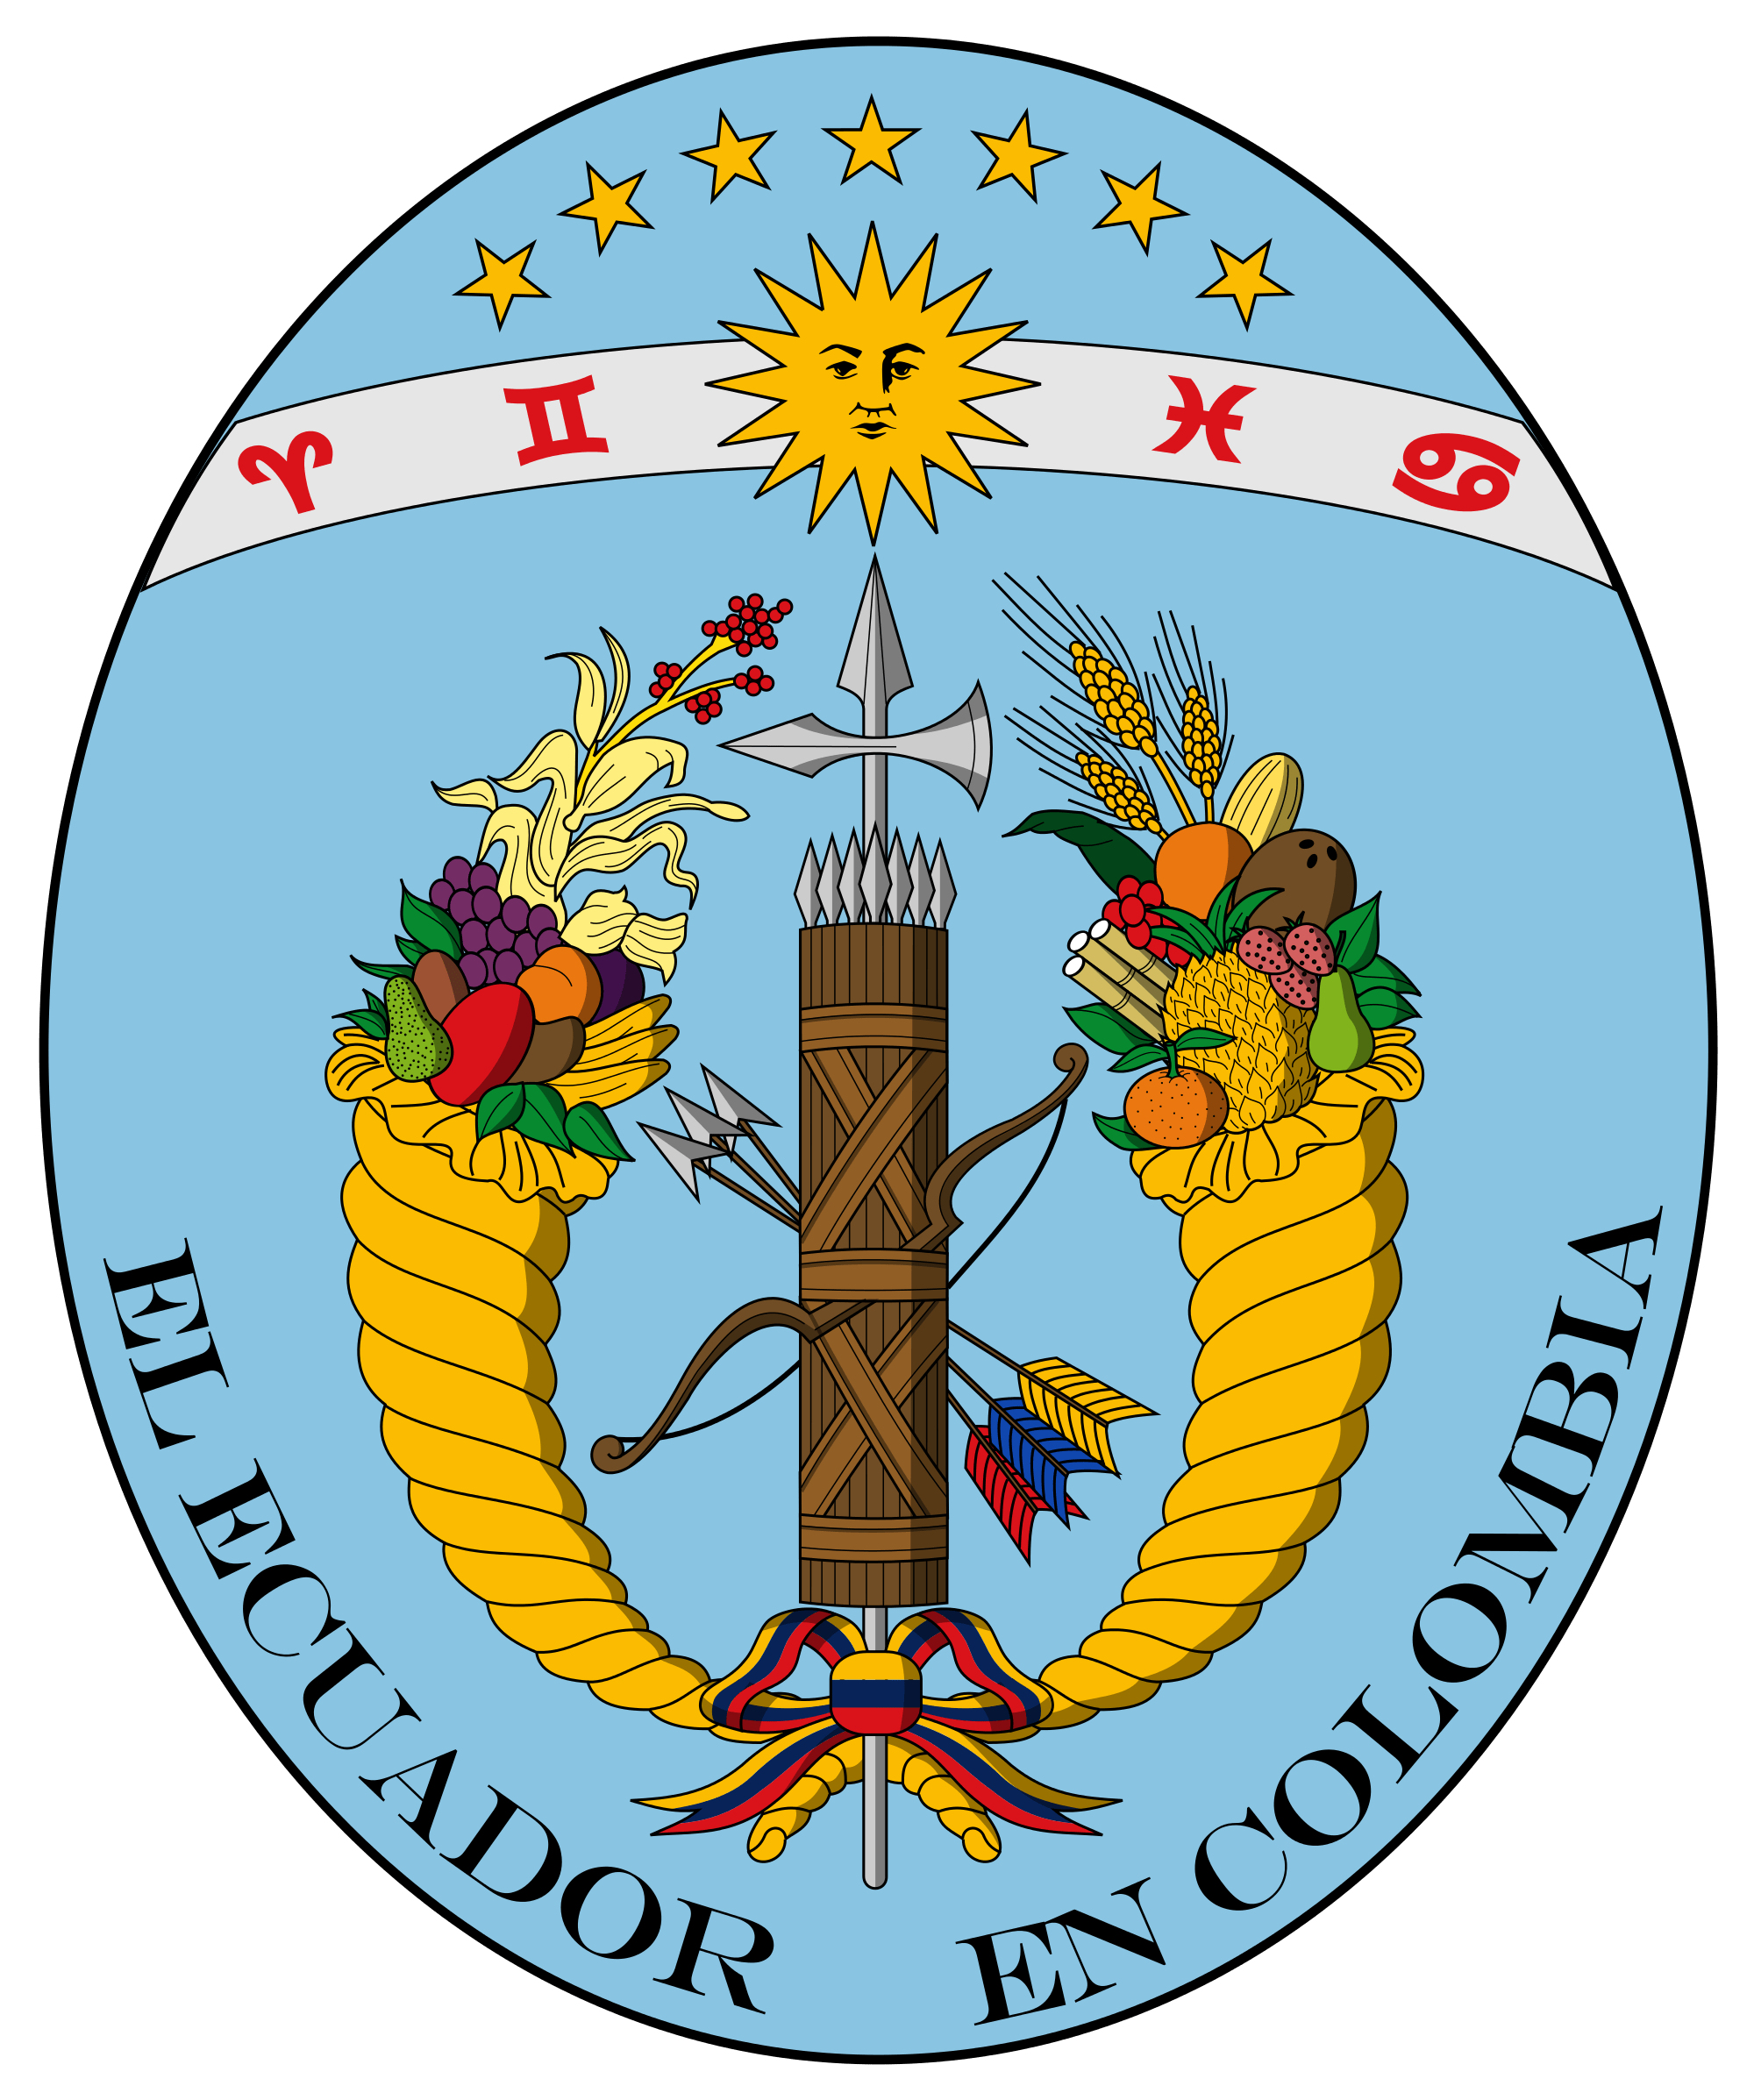 Escudo de armas ecuador 1830